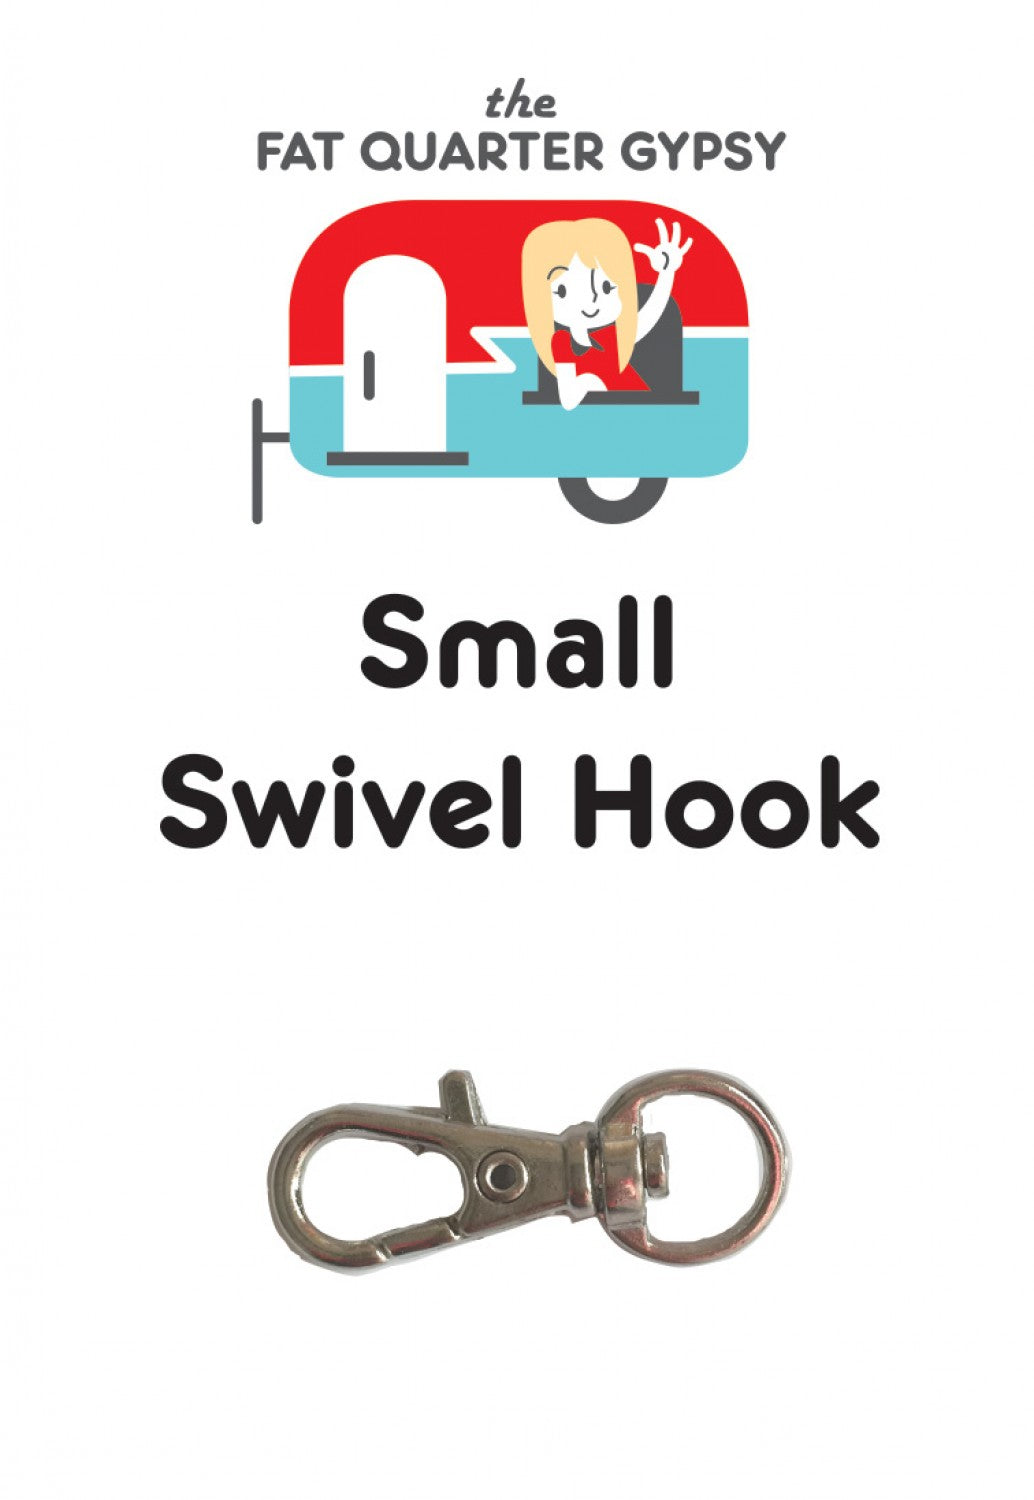 Small Swivel Hook by Joanne Hillestad of Sew Organized Design